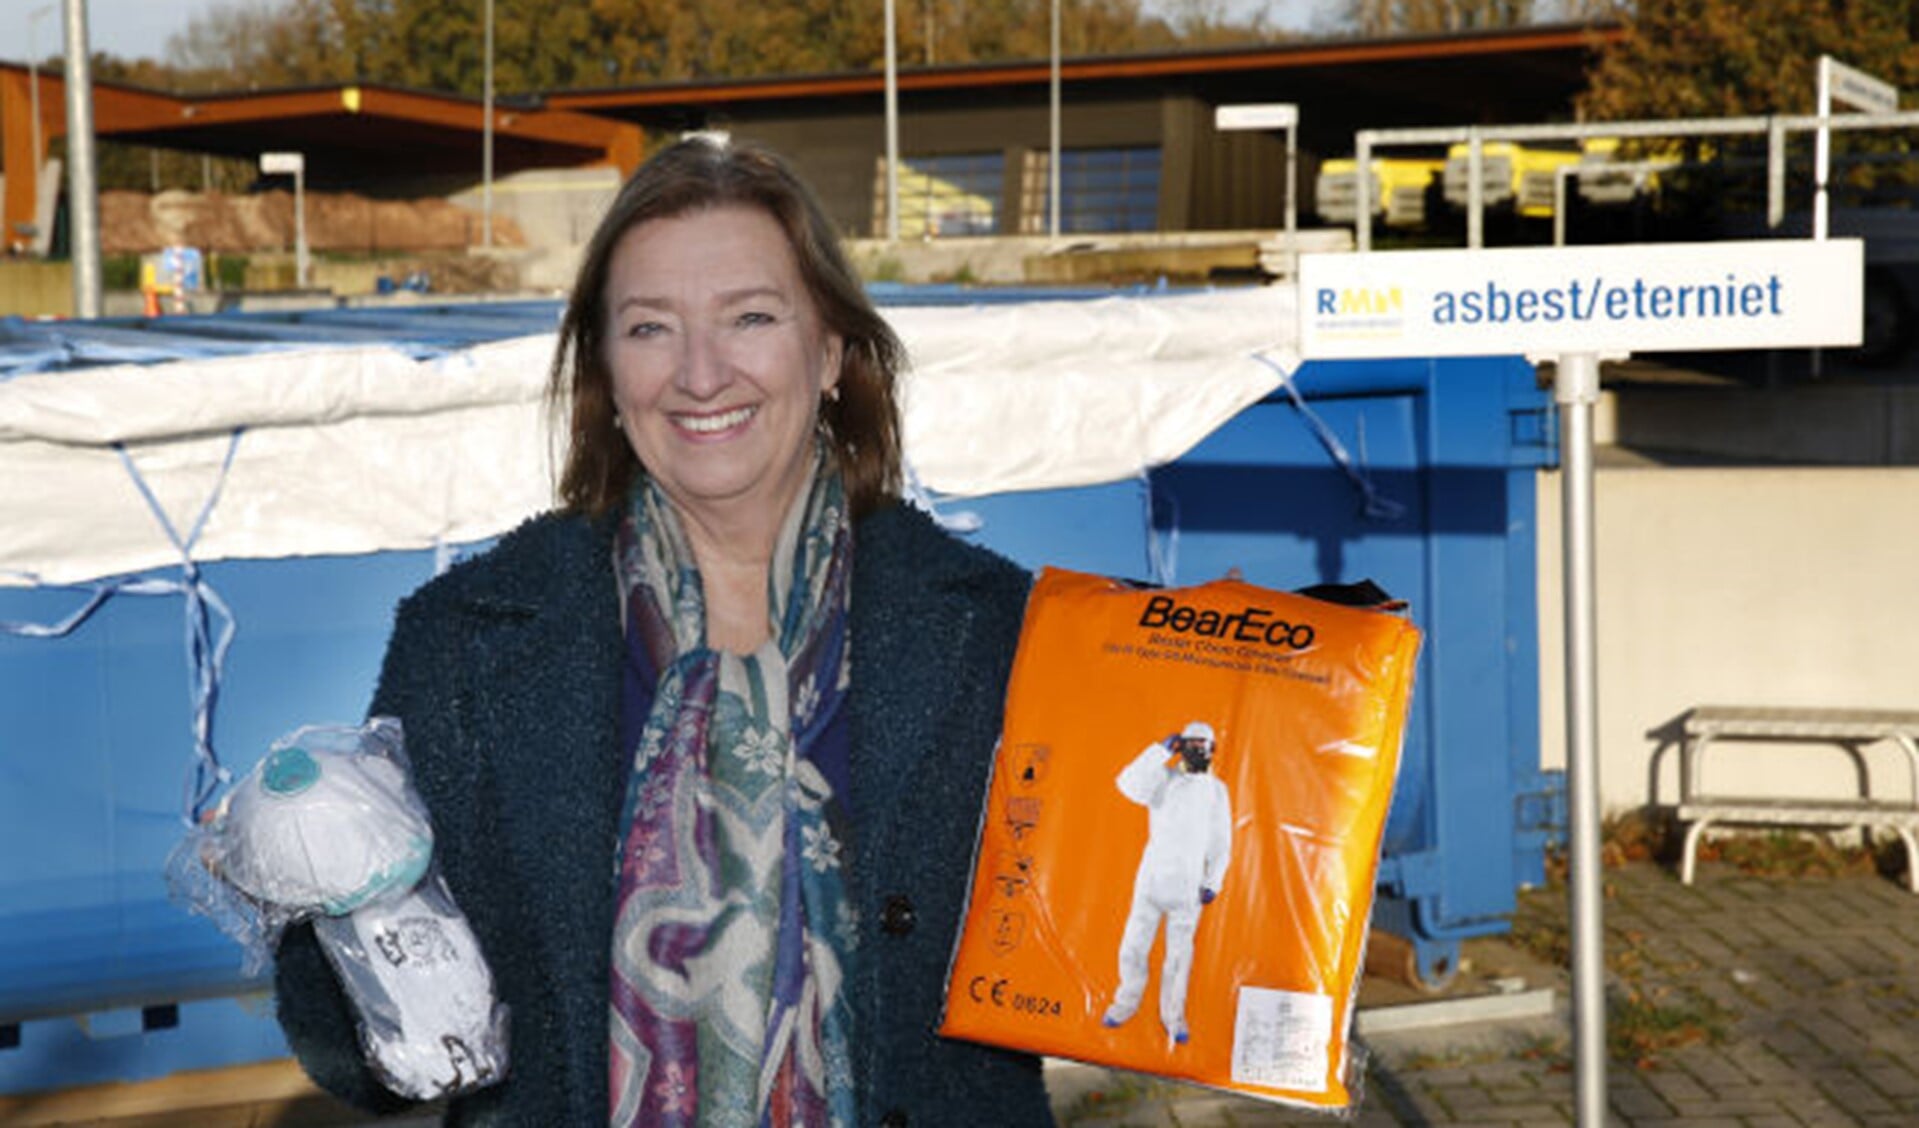 Wethouder Wilma de Boer - Leijsma met beschermingsmiddelen om asbest te kunnen verwijderen.